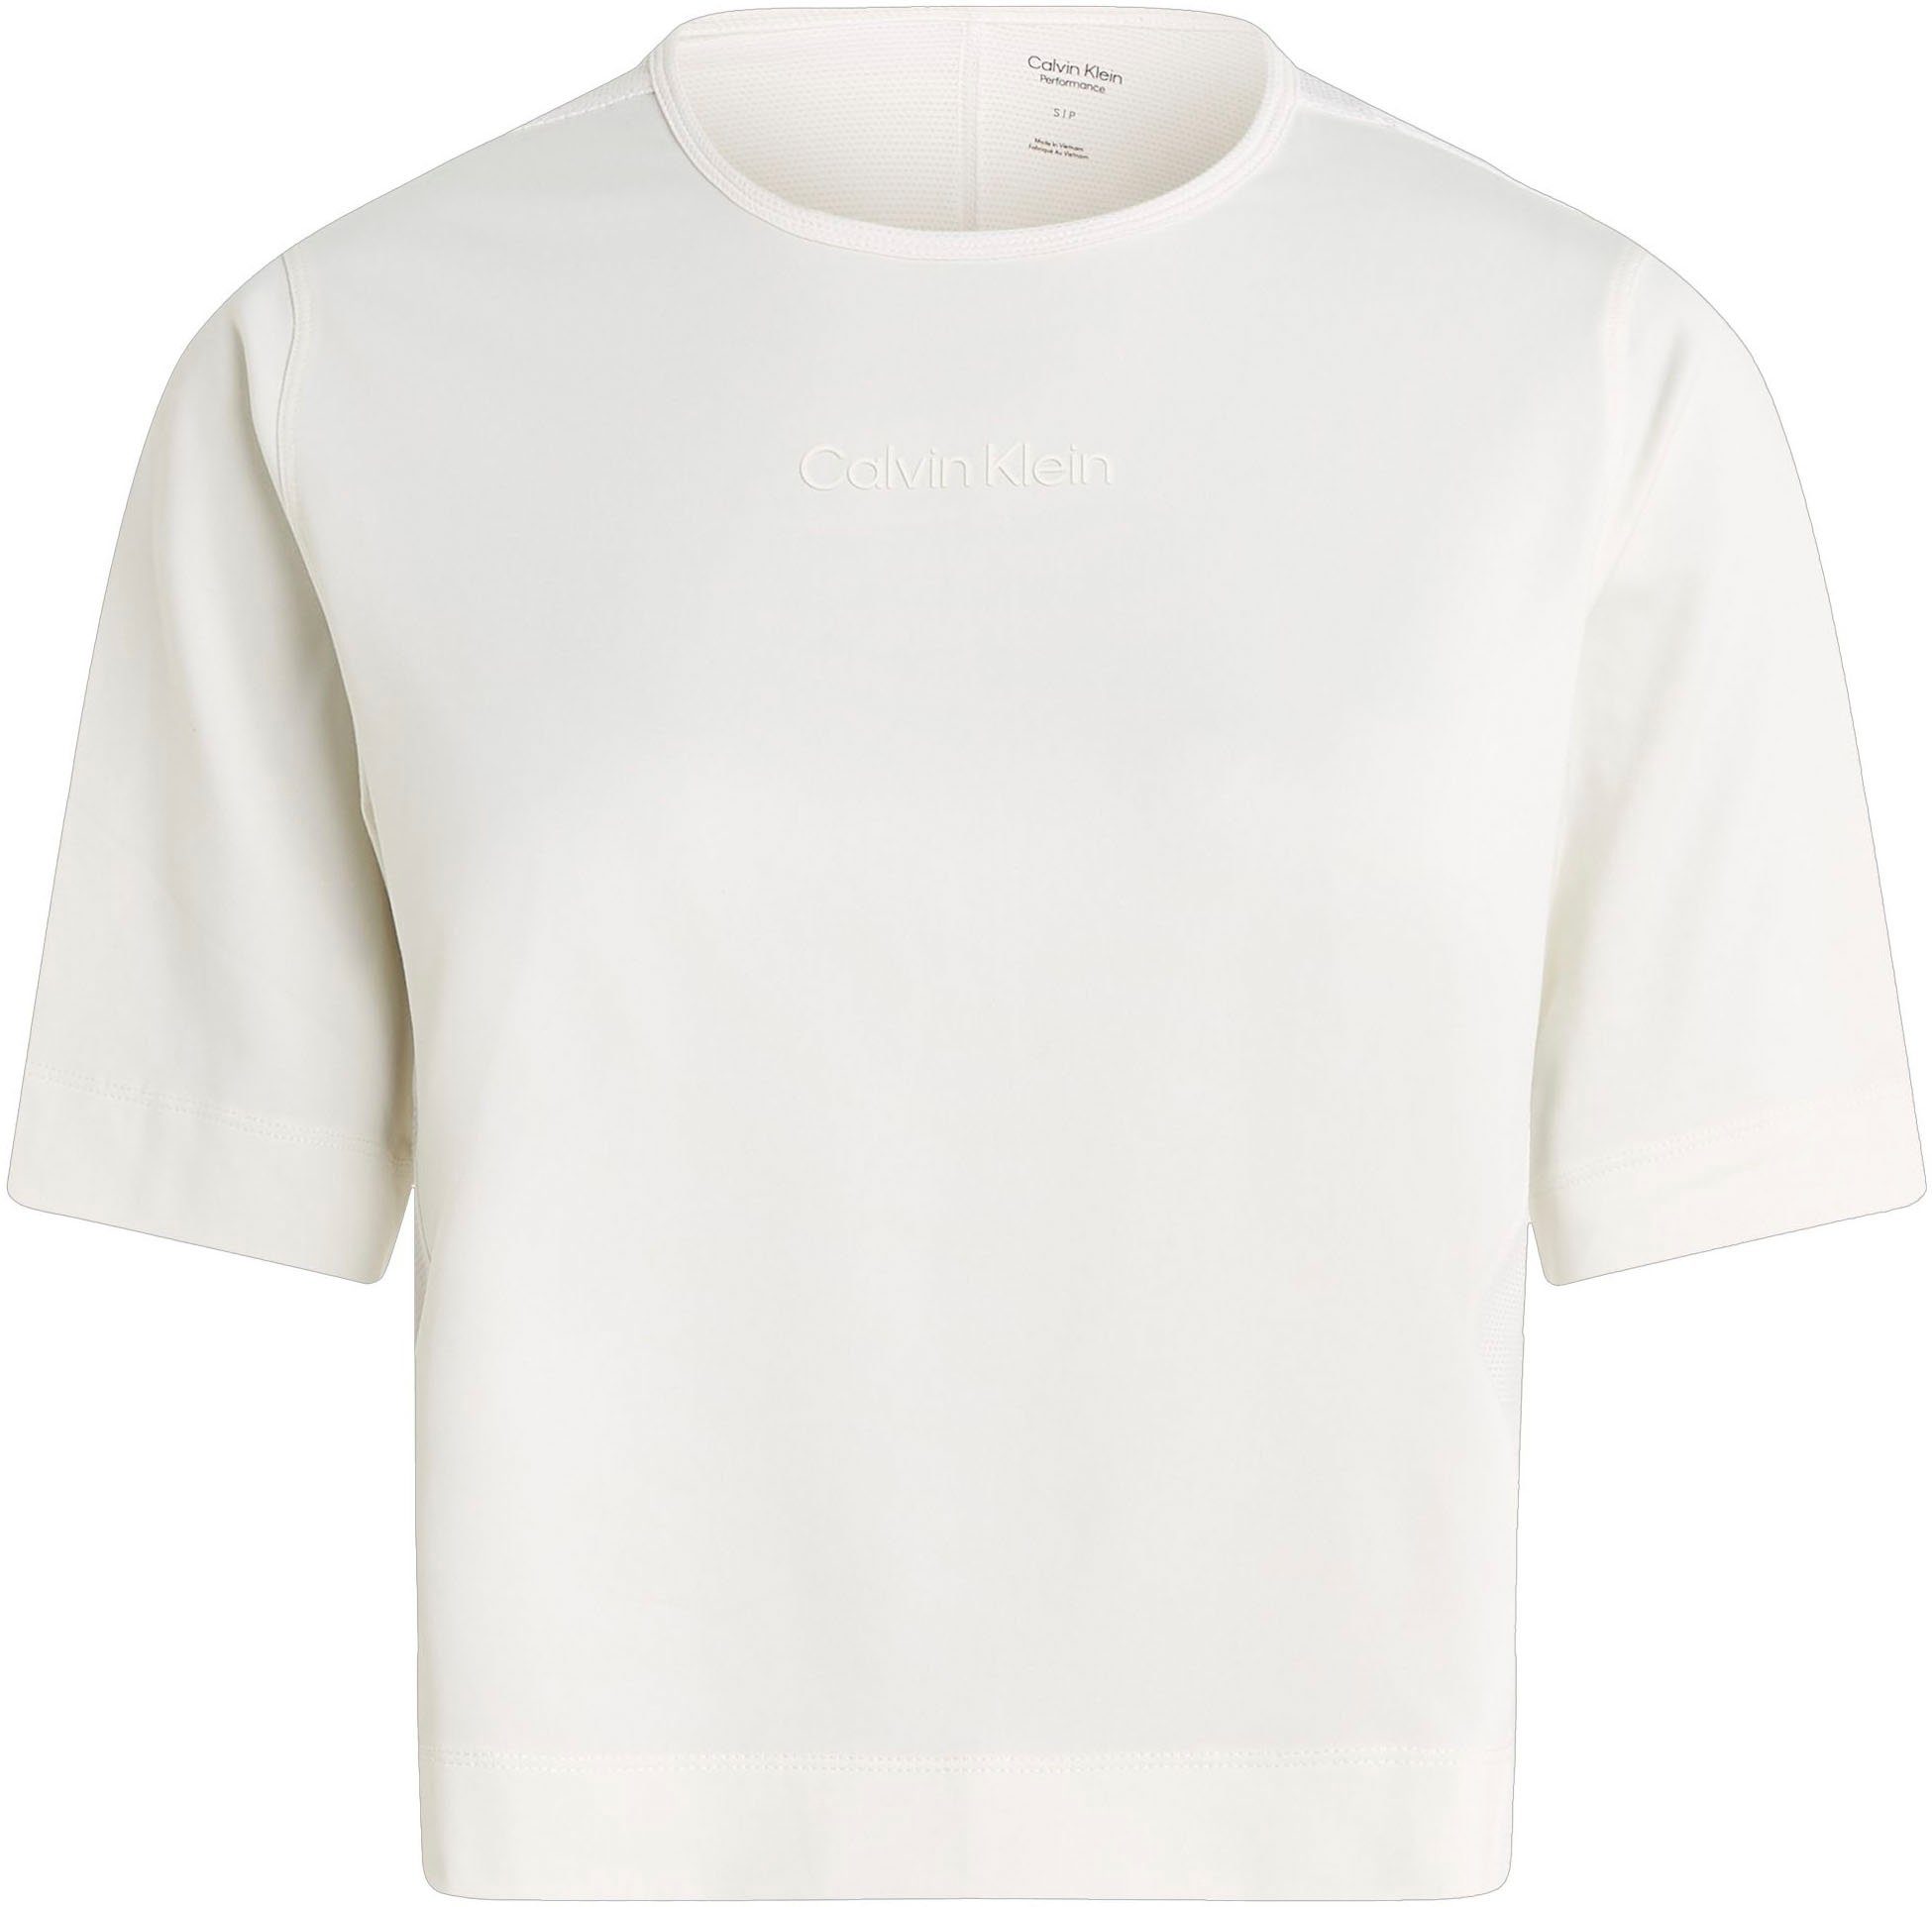 Calvin Klein T-Shirt White Sport Suede